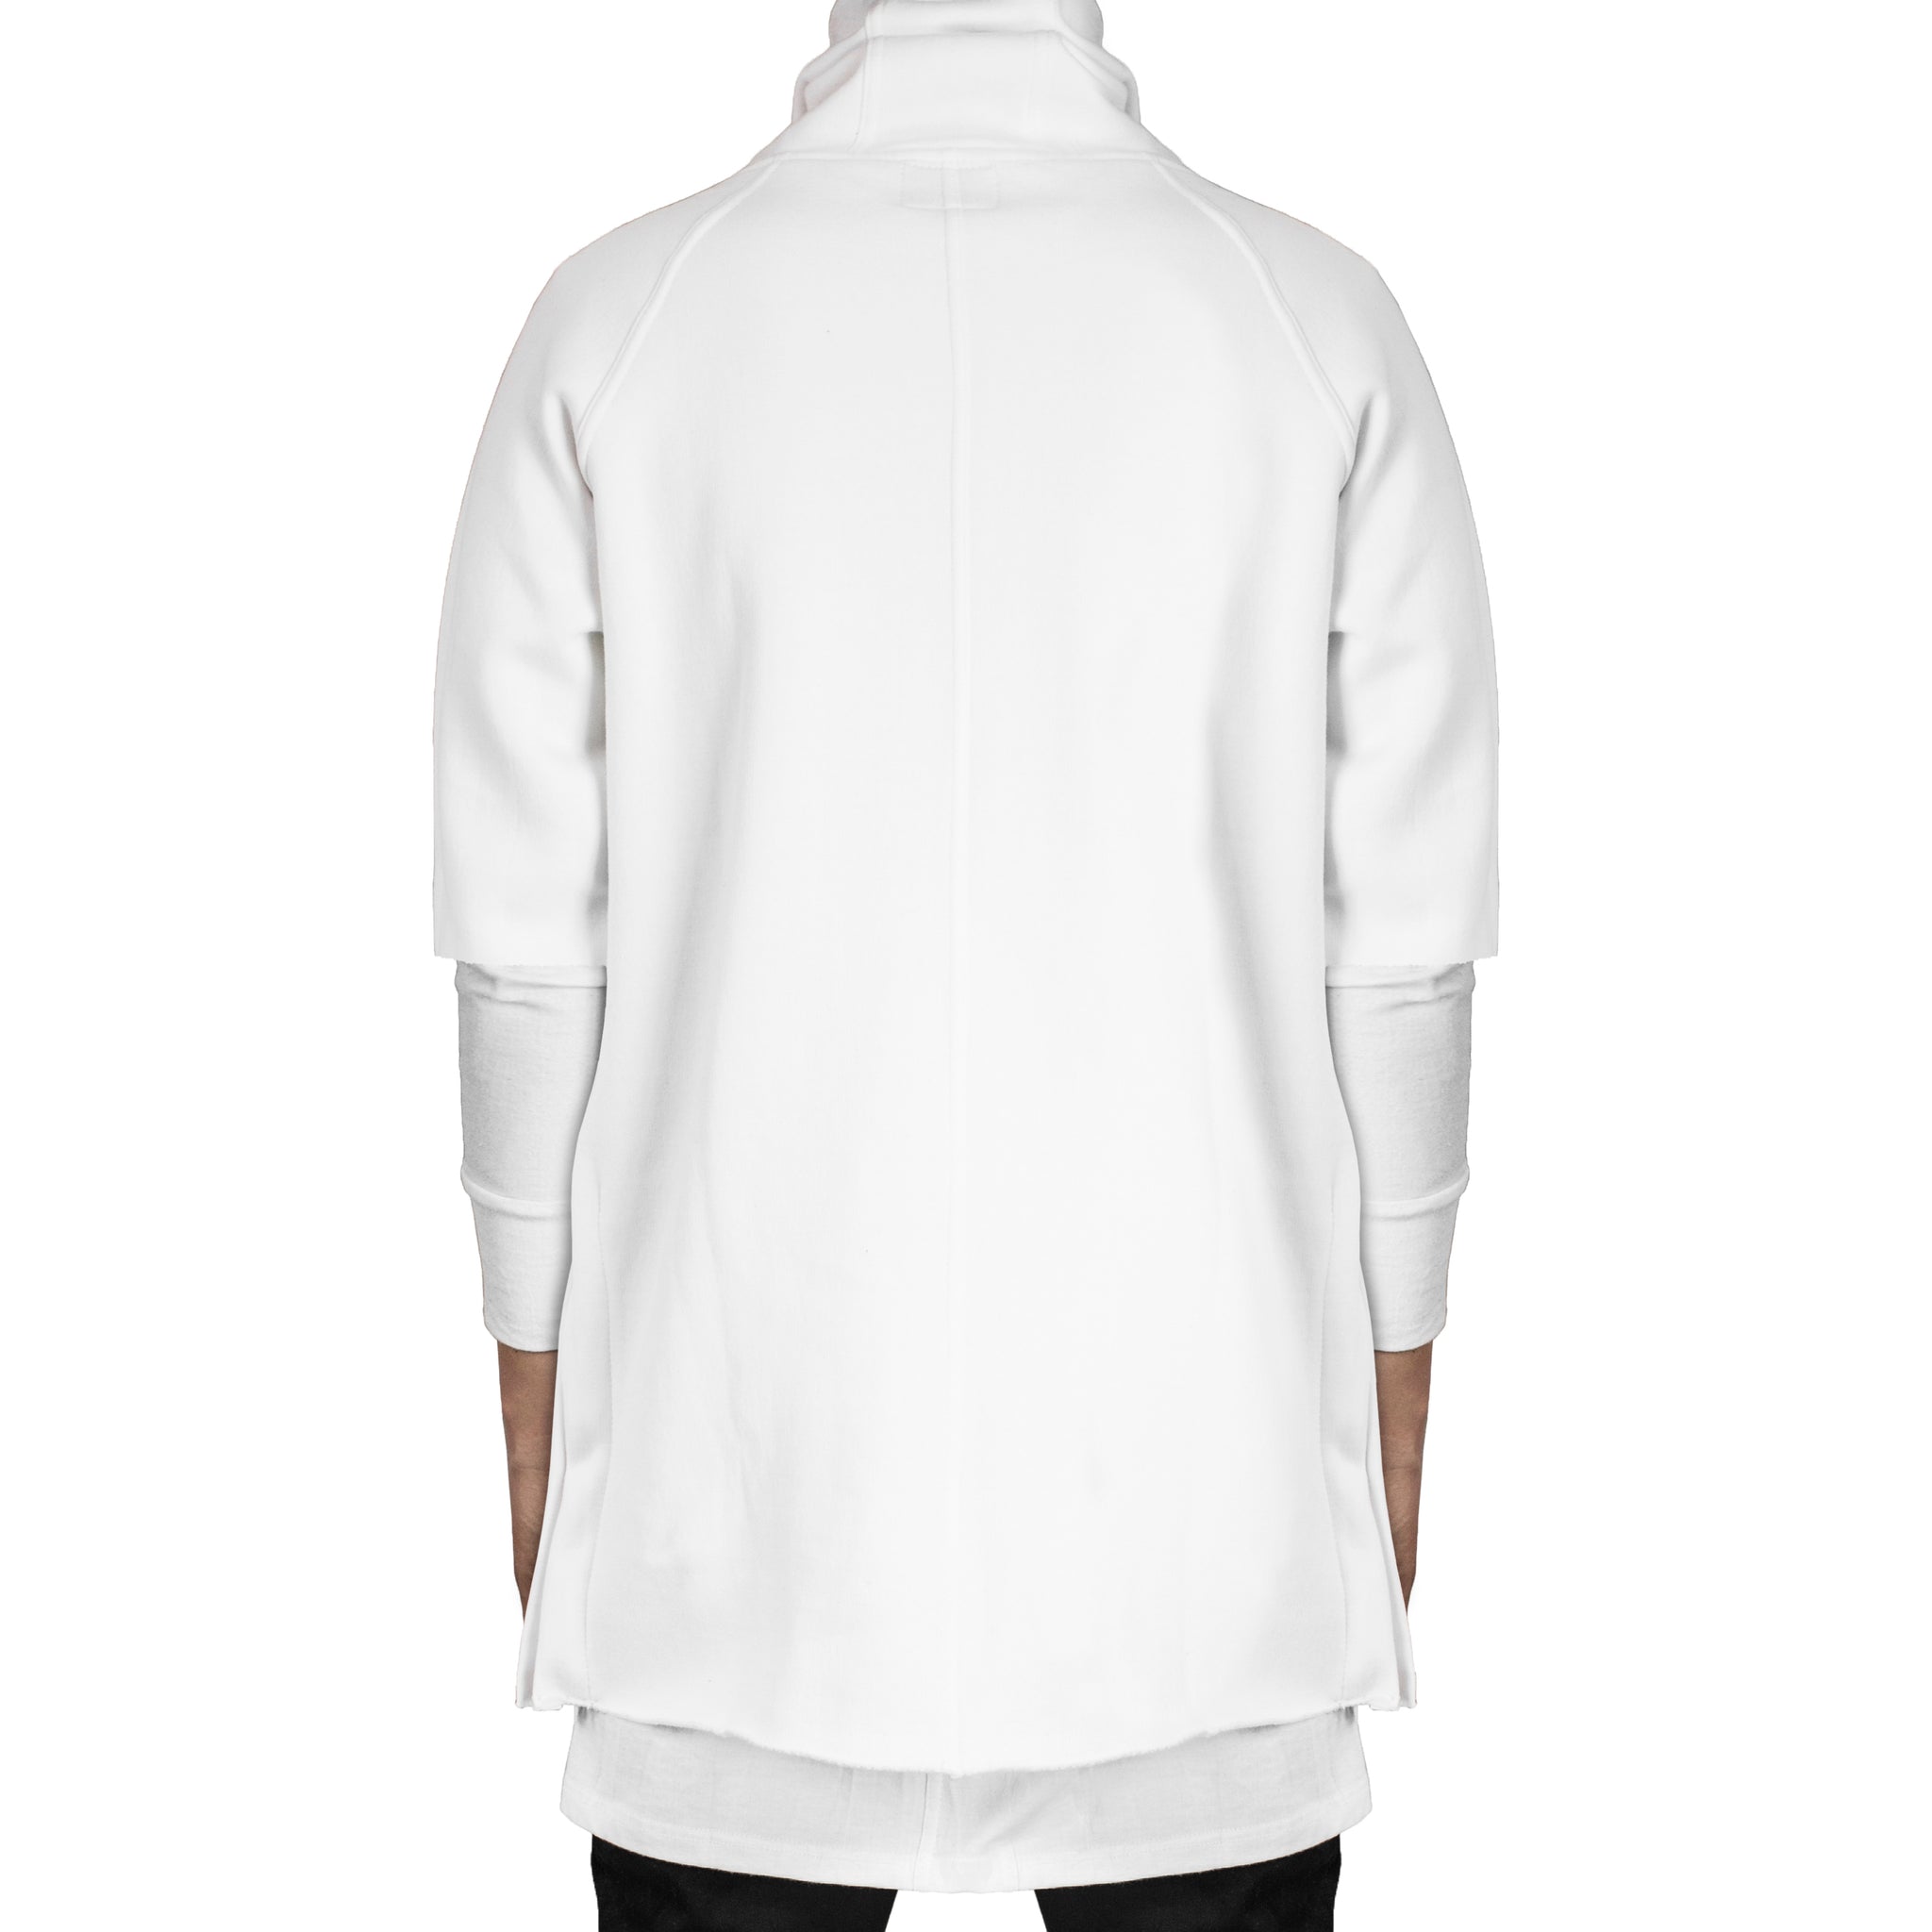 Camiseta con capucha y cremallera: blanca